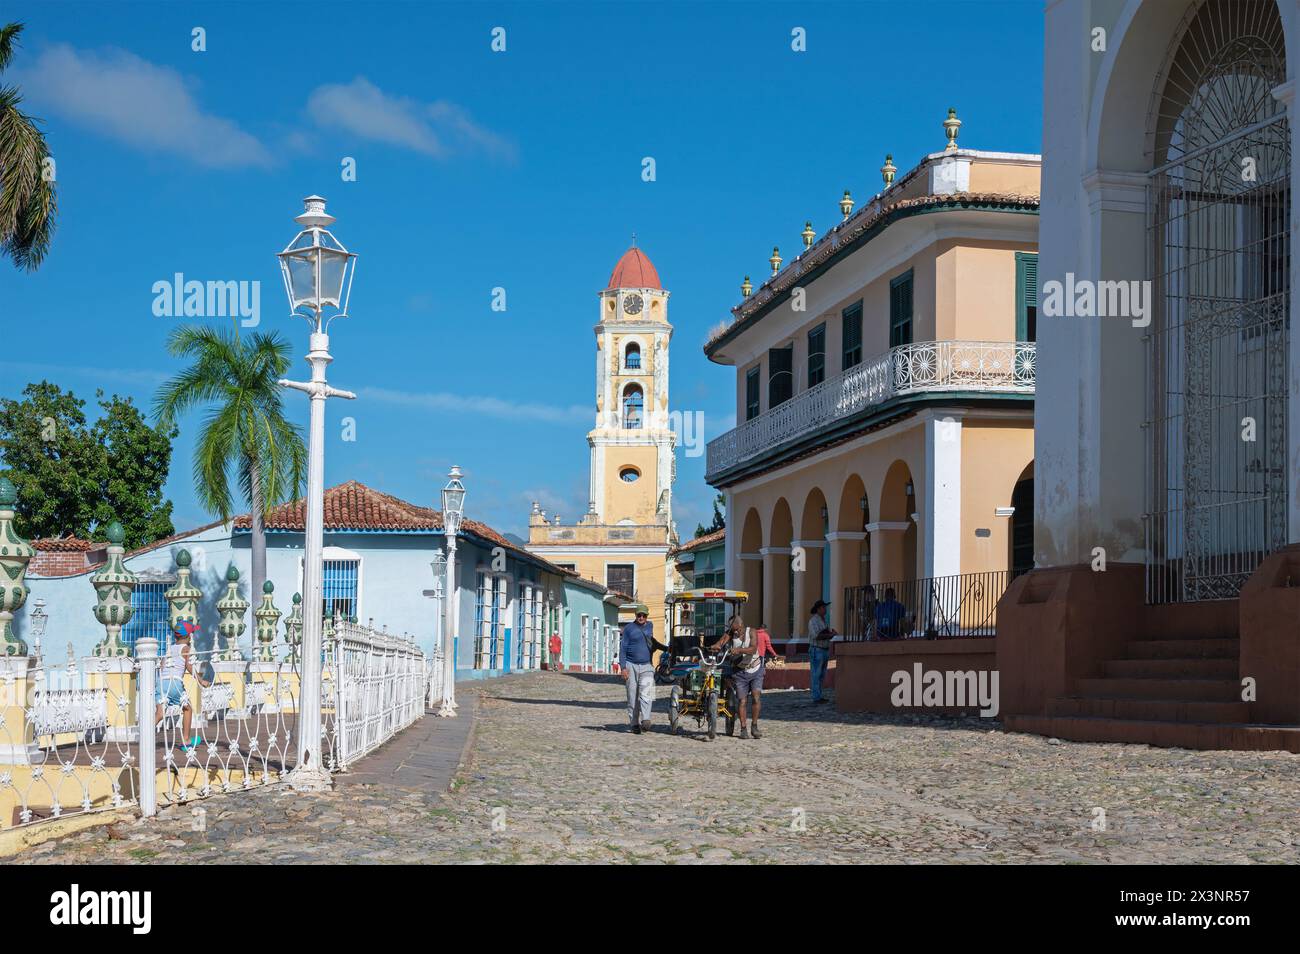 L'église Saint François d'assise du 19ème siècle à côté de la Plaza Mayor dans la partie vieille ville de Trinidad, Cuba Banque D'Images